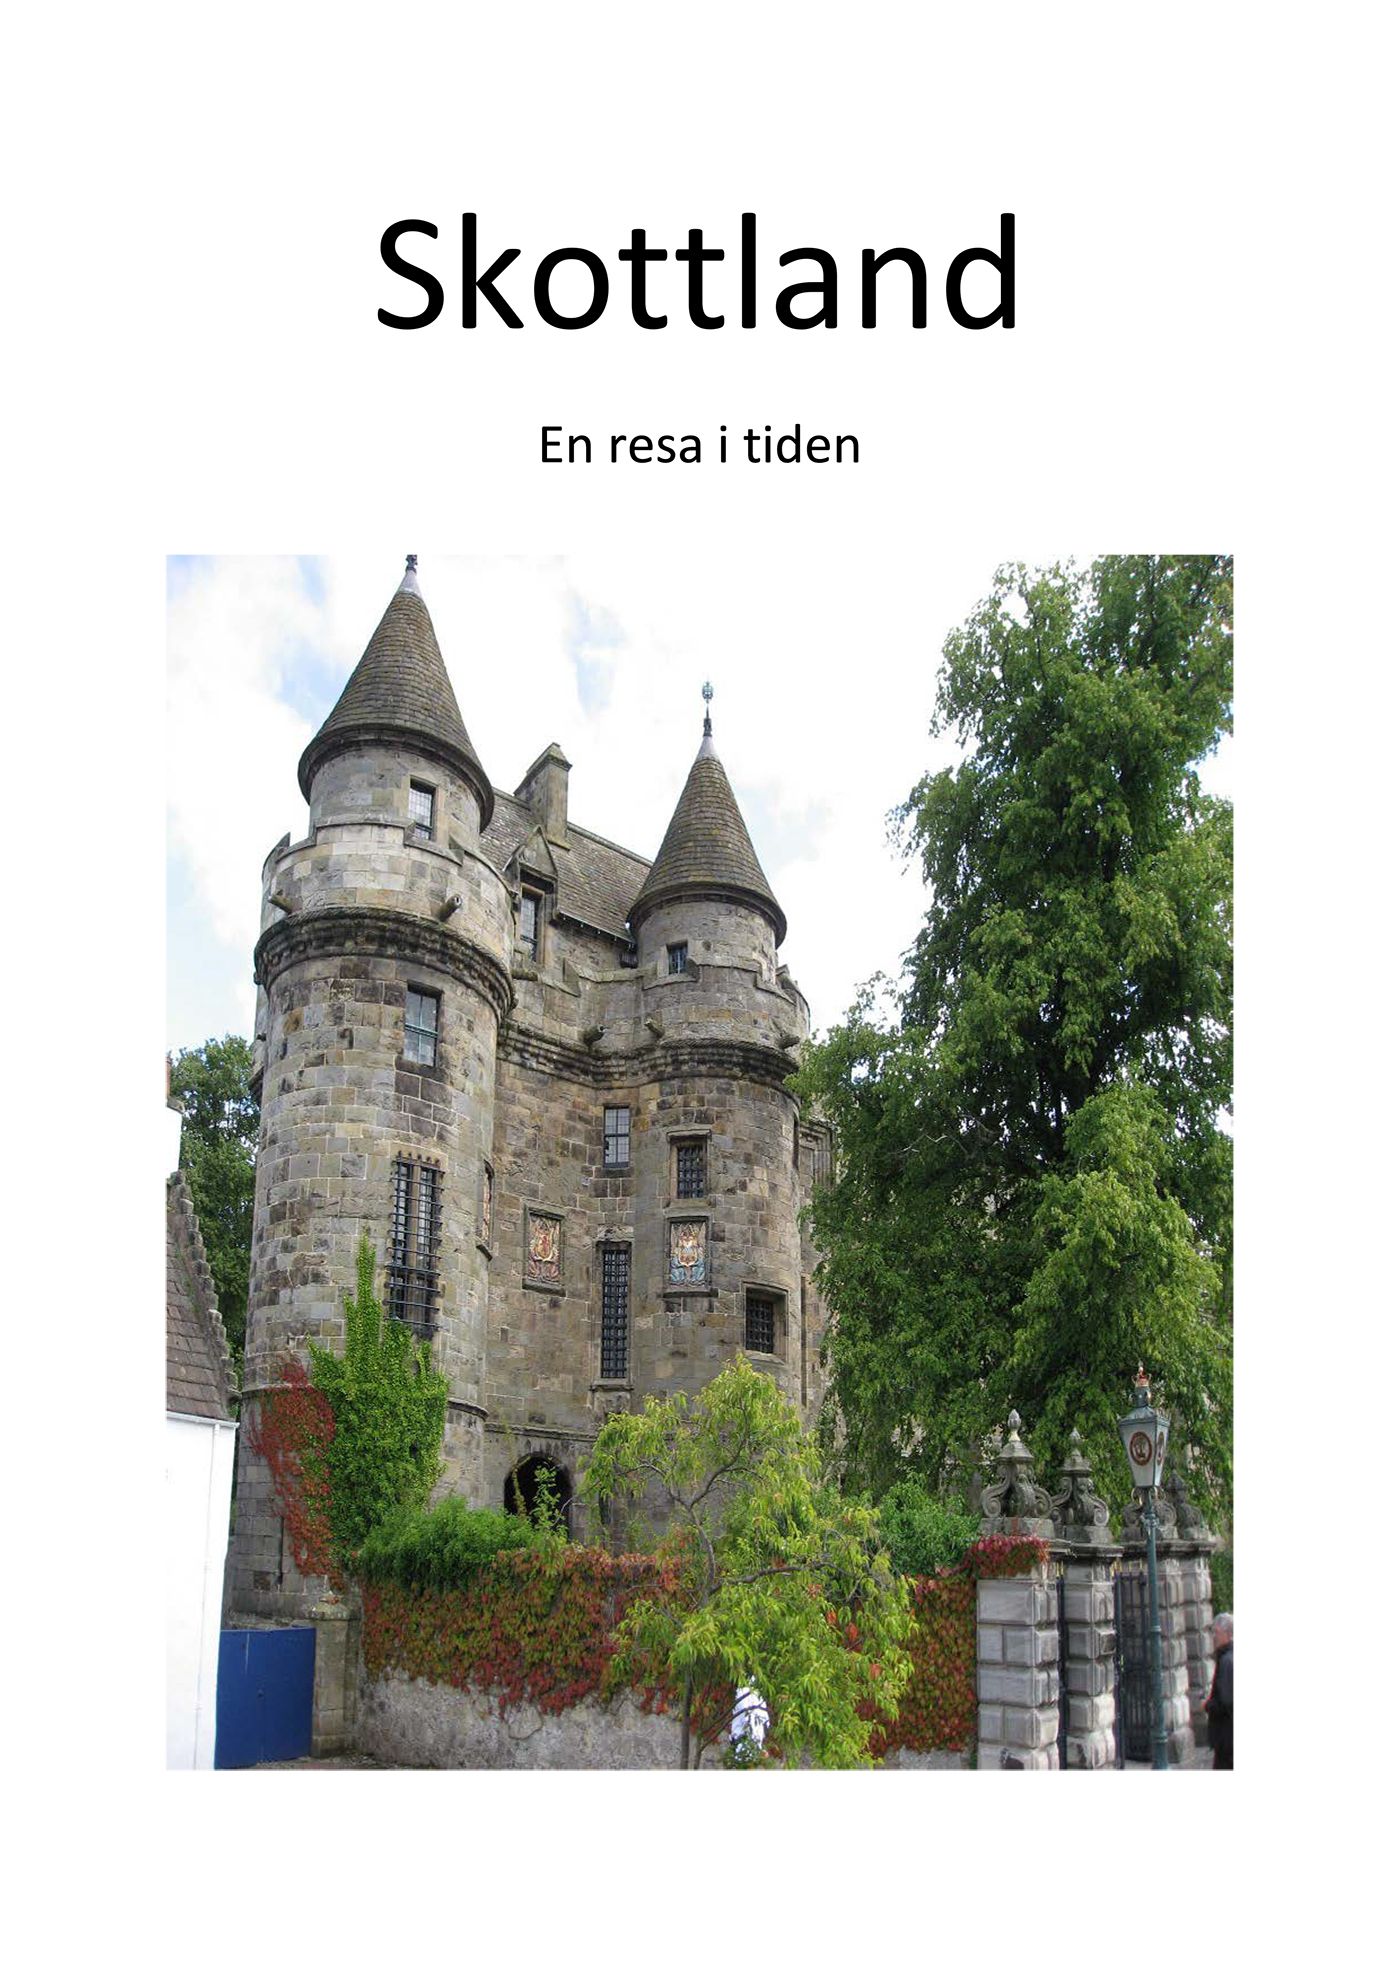 Skottland - En resa i tiden, e-bok av Curt Jonsson